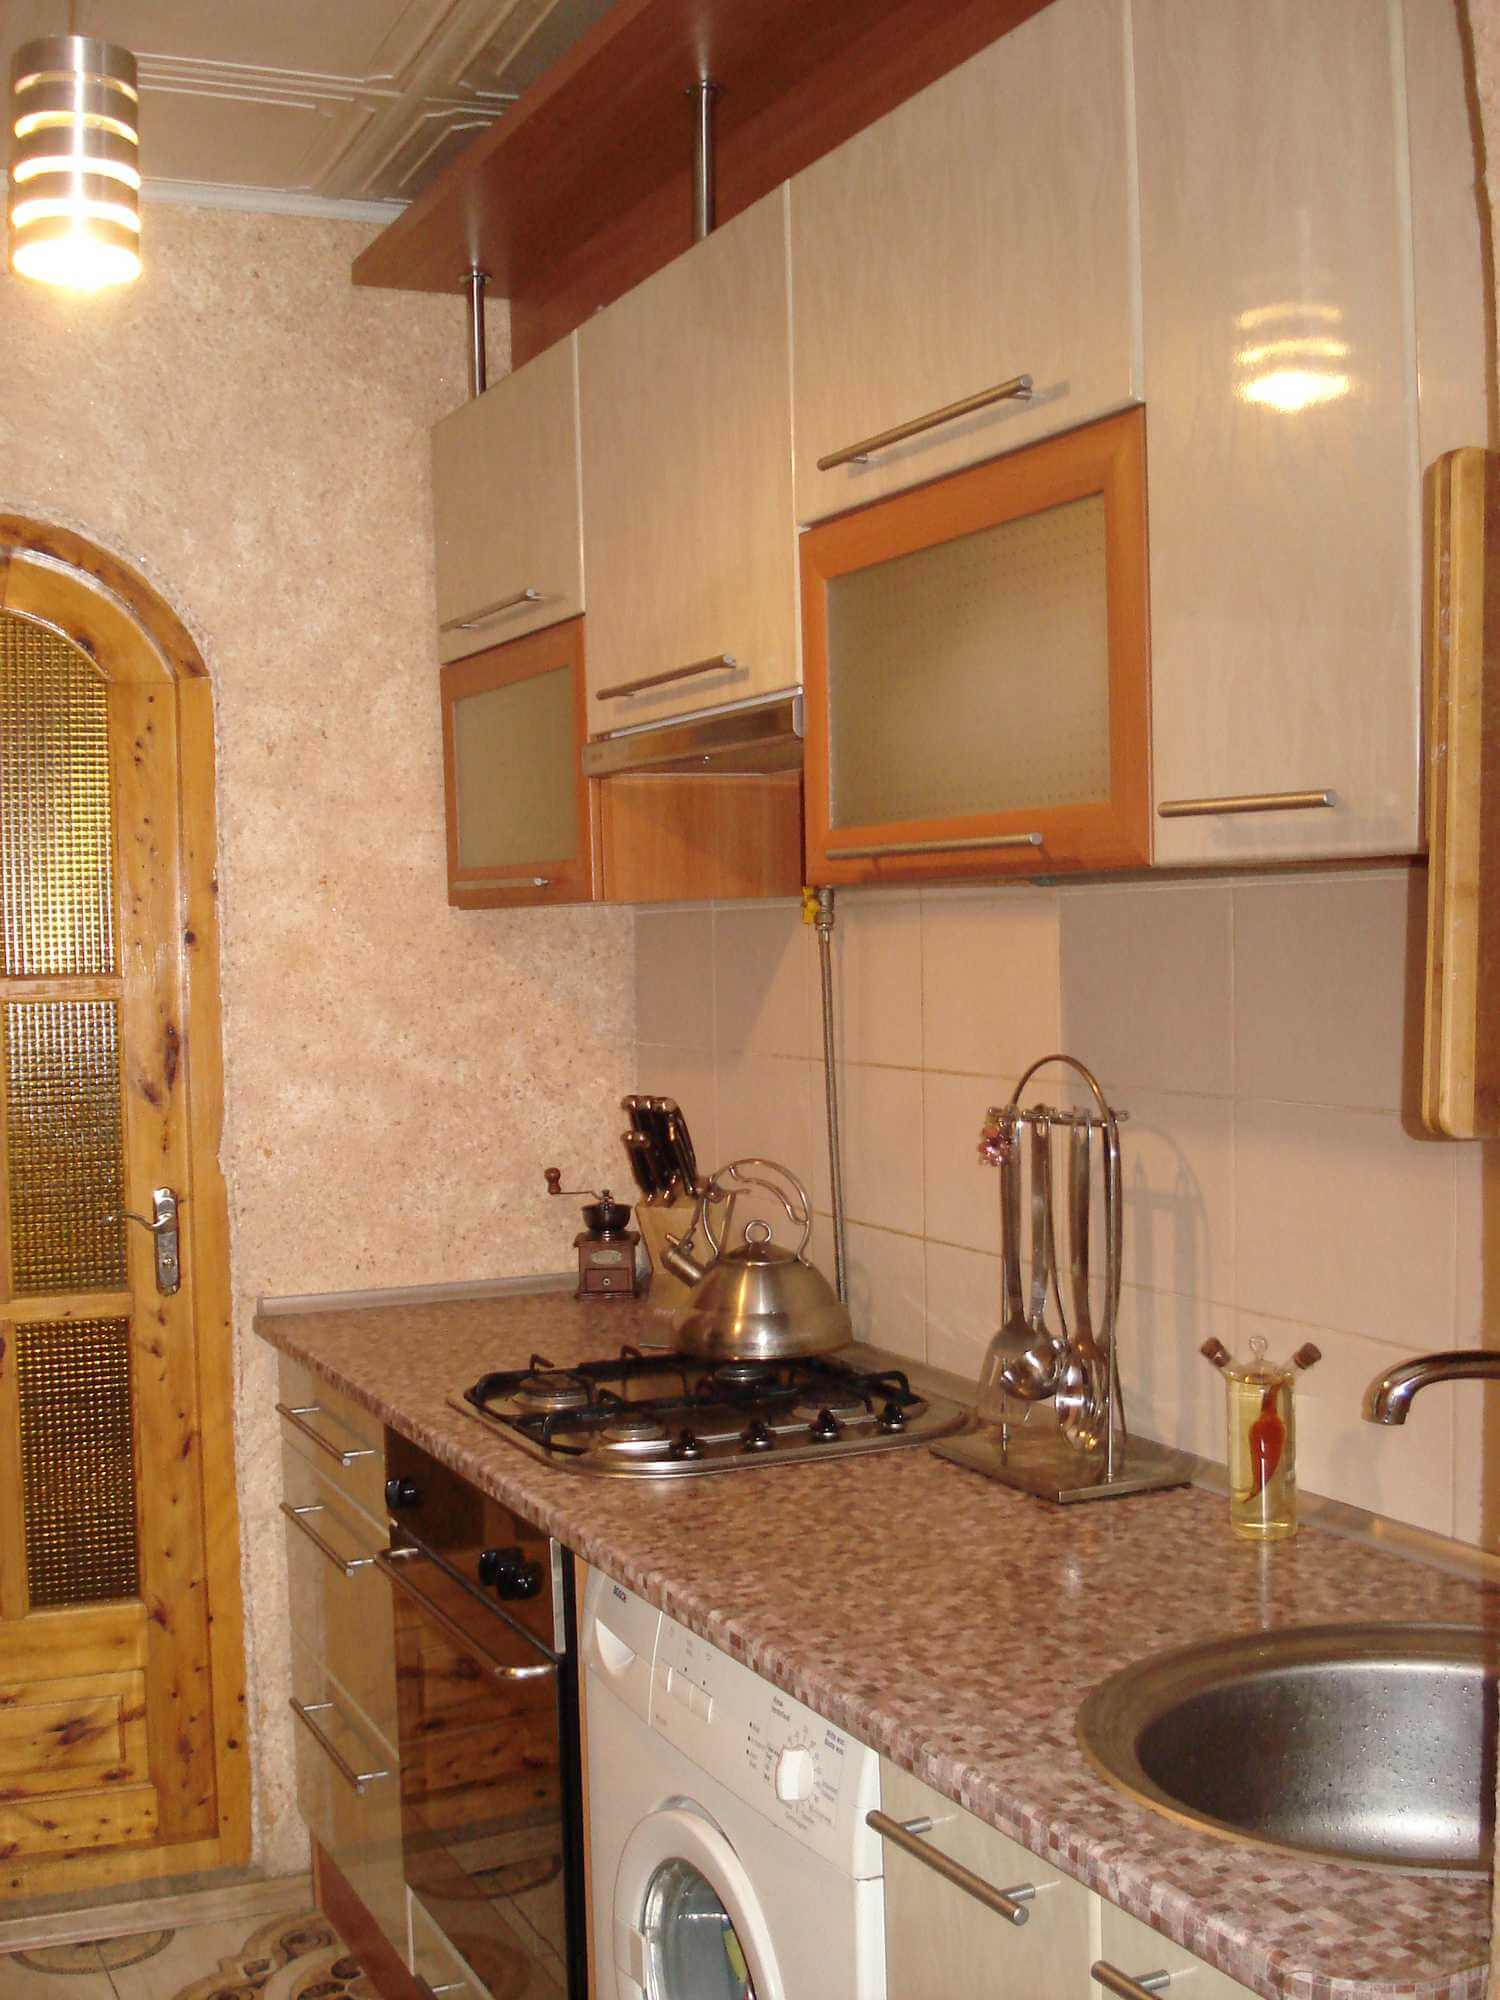 Двухкомнатная квартира на ул.Боткинская 3 (53кв.м) до 5 гостей